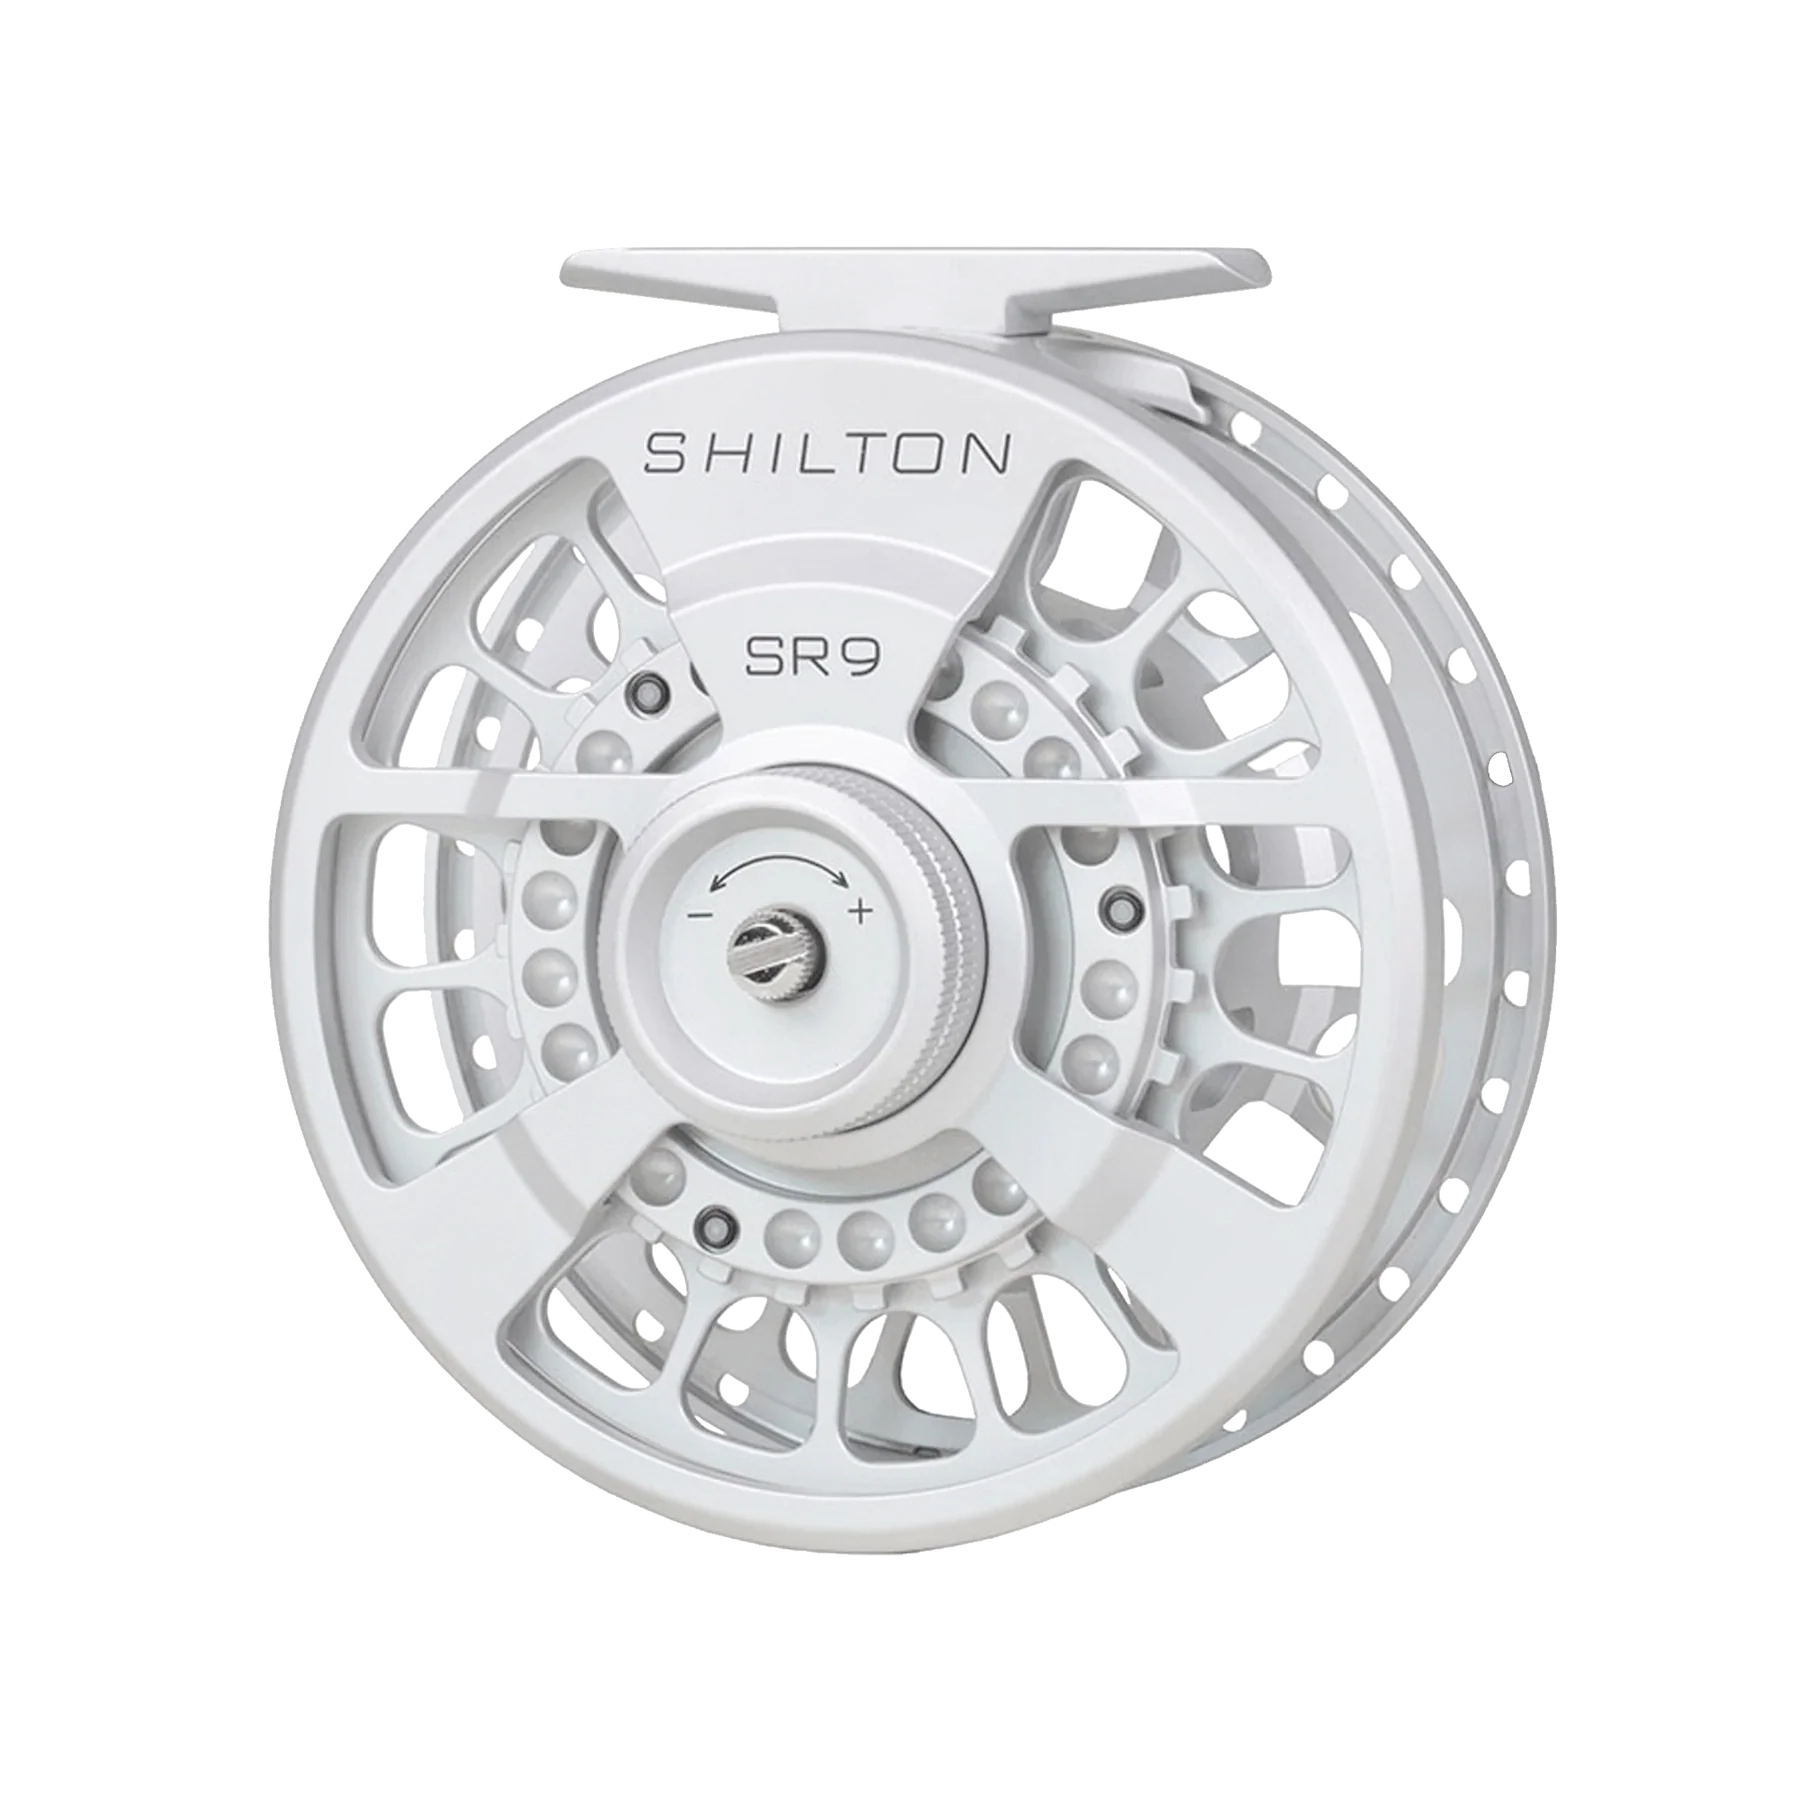 Shilton - Custom Colour Orders - Xplorer Fly Fishing